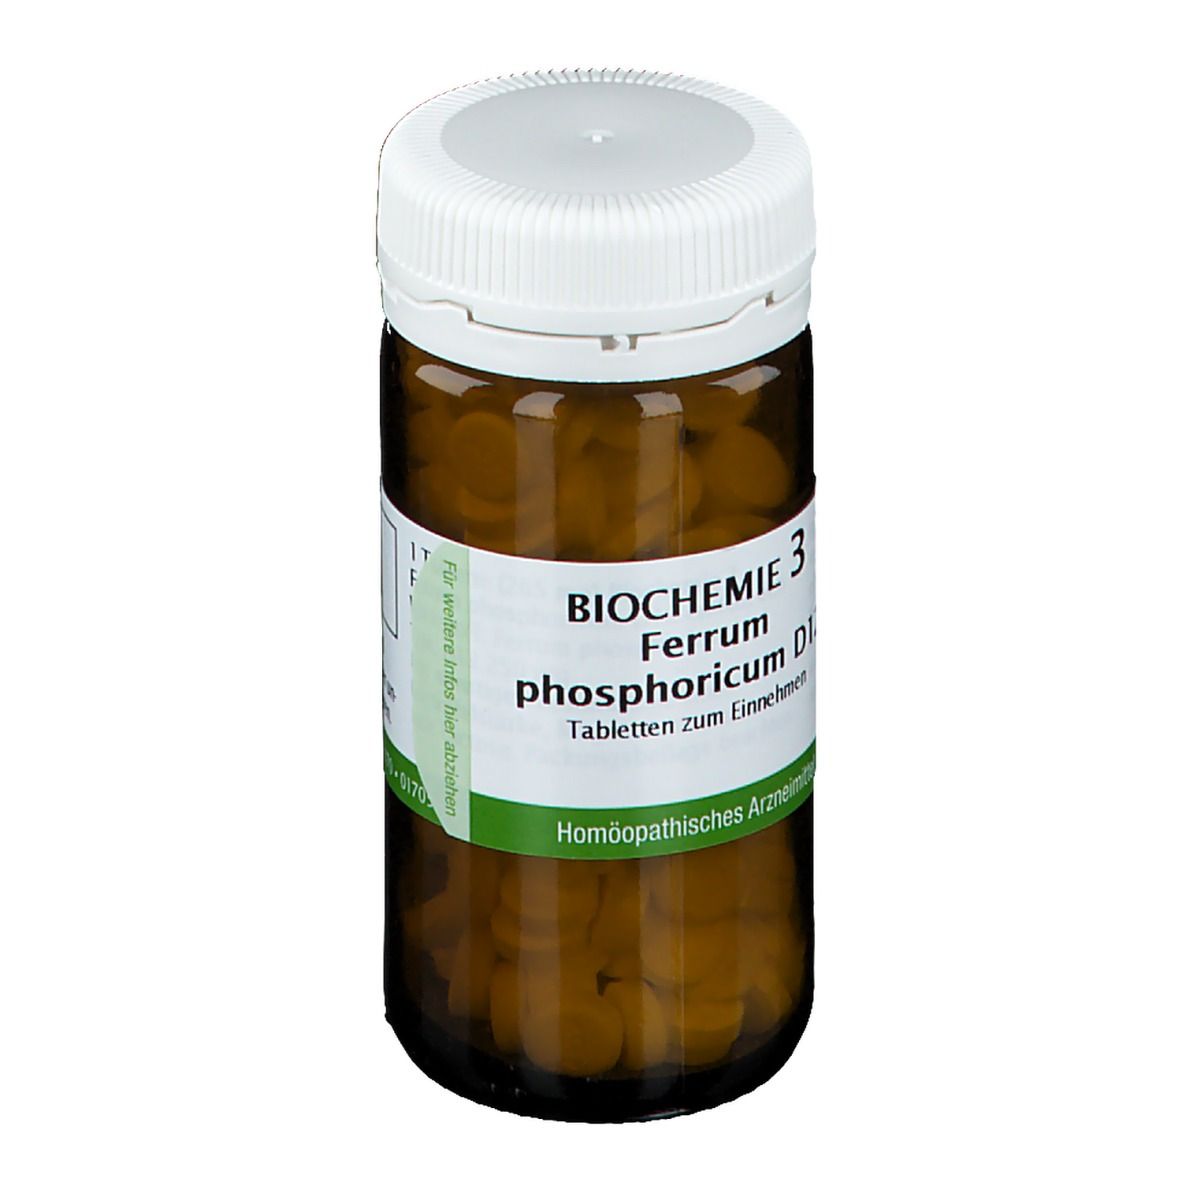 Bombastus Biochemie 3 Ferrum phosphoricum D 12 Tabletten